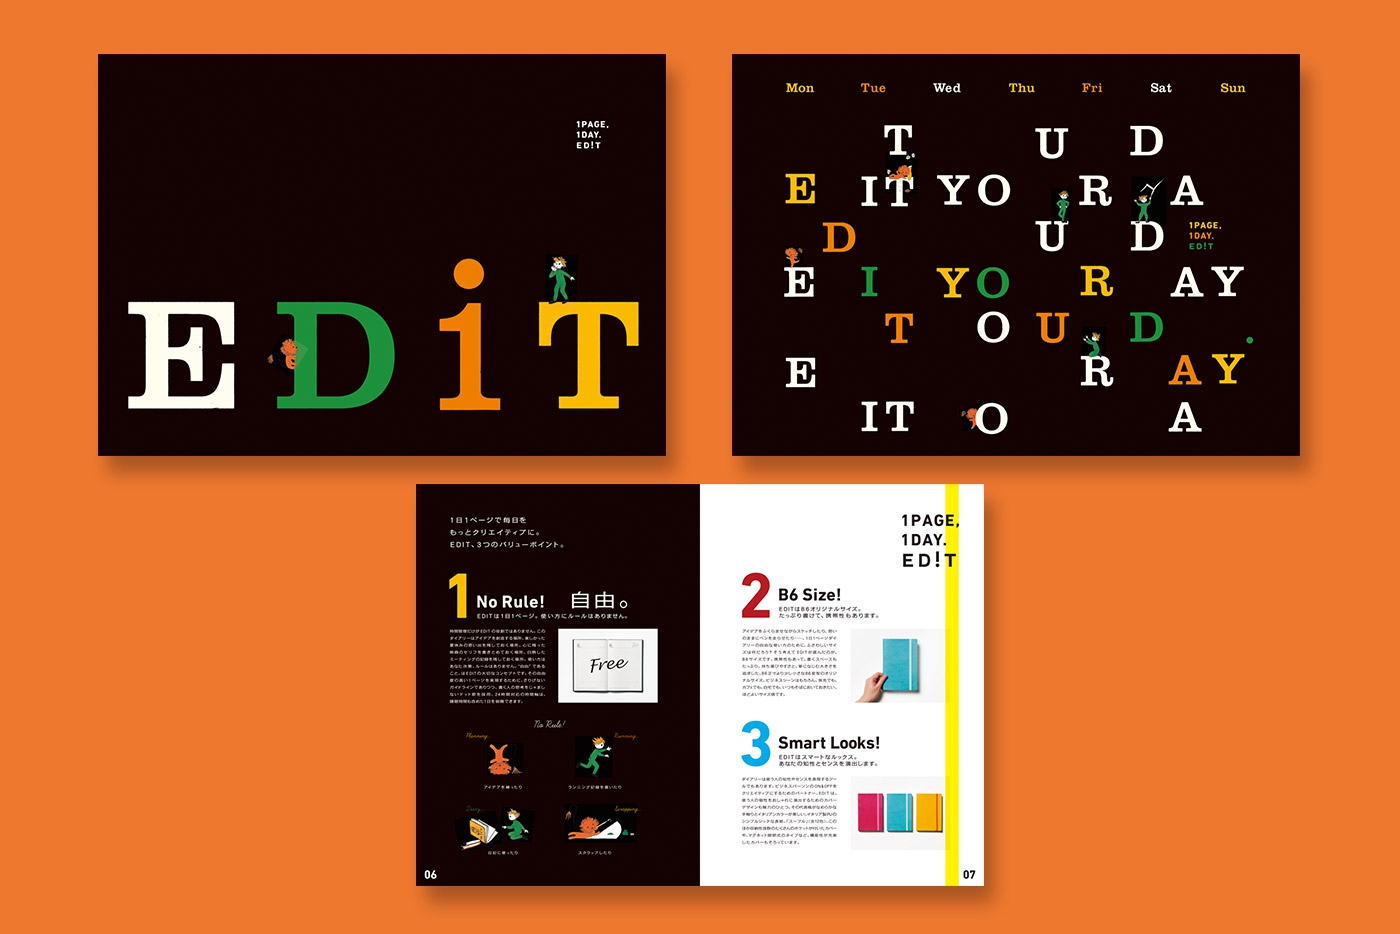 EDiT手帳2013年版のカタログ